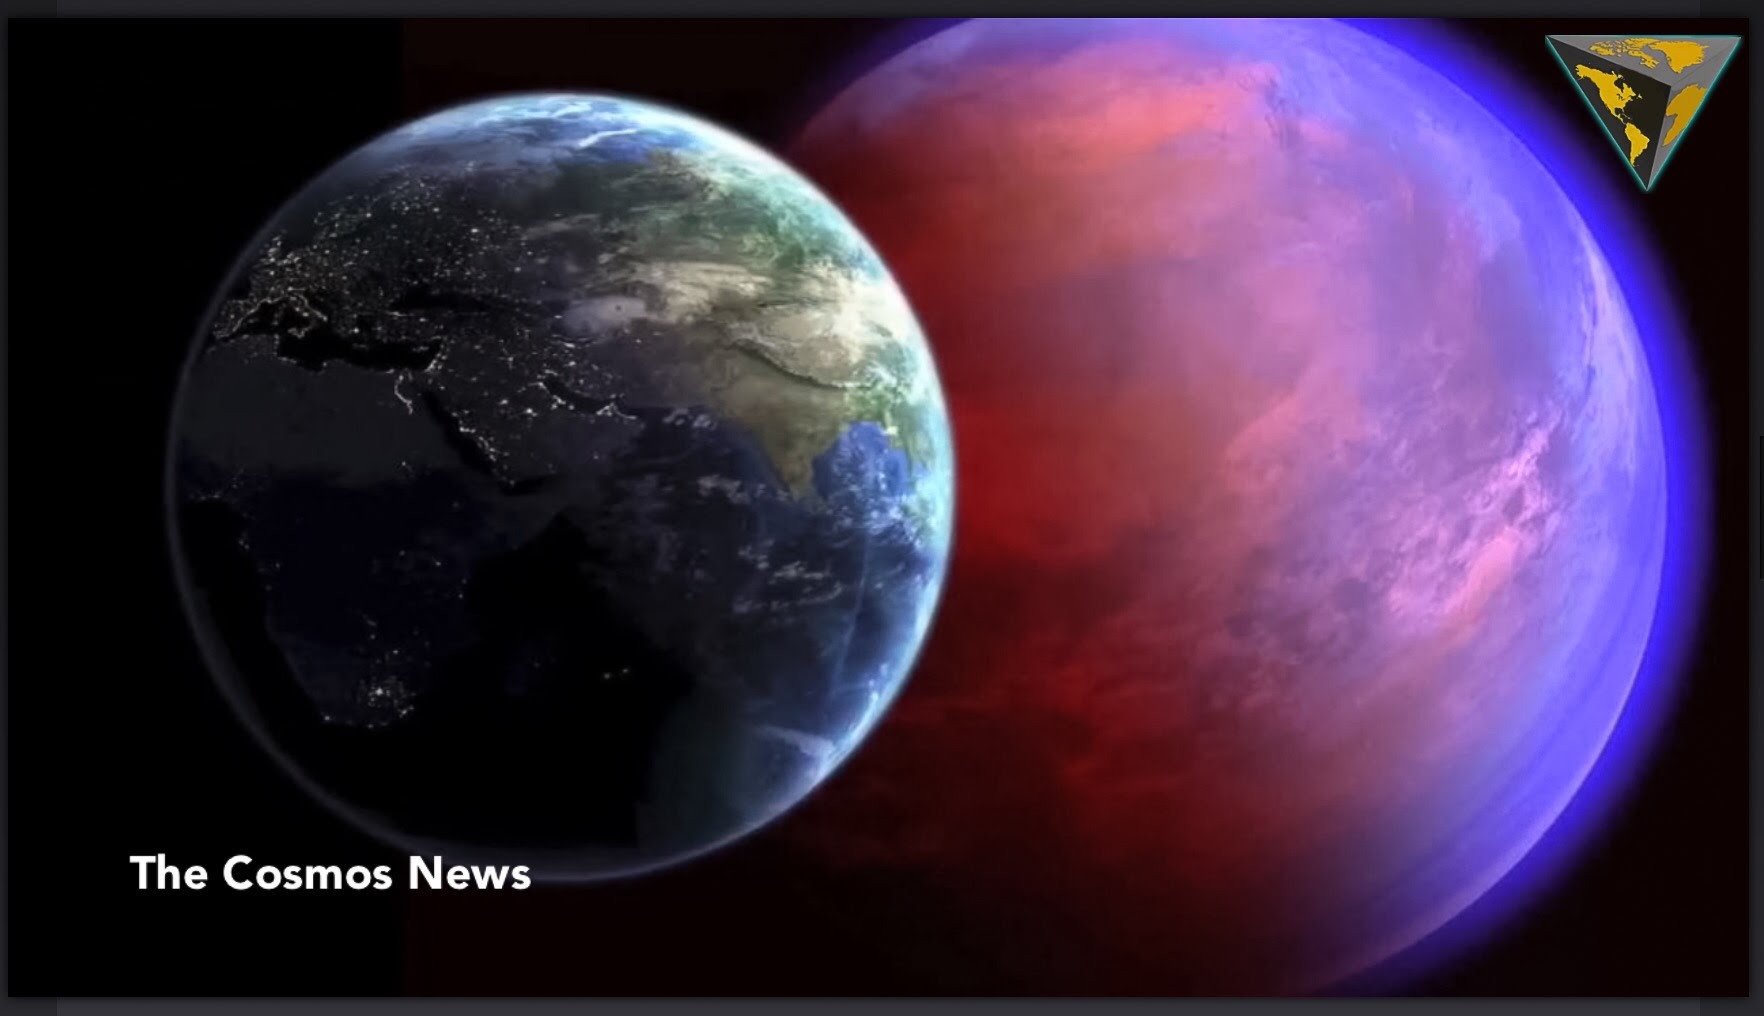 Планете супер земля. 55 Cancri e алмазная Планета. Планета Алмаз 55 Cancri. 55 Канкри е Планета. Экзопланета 55 Cancri e.